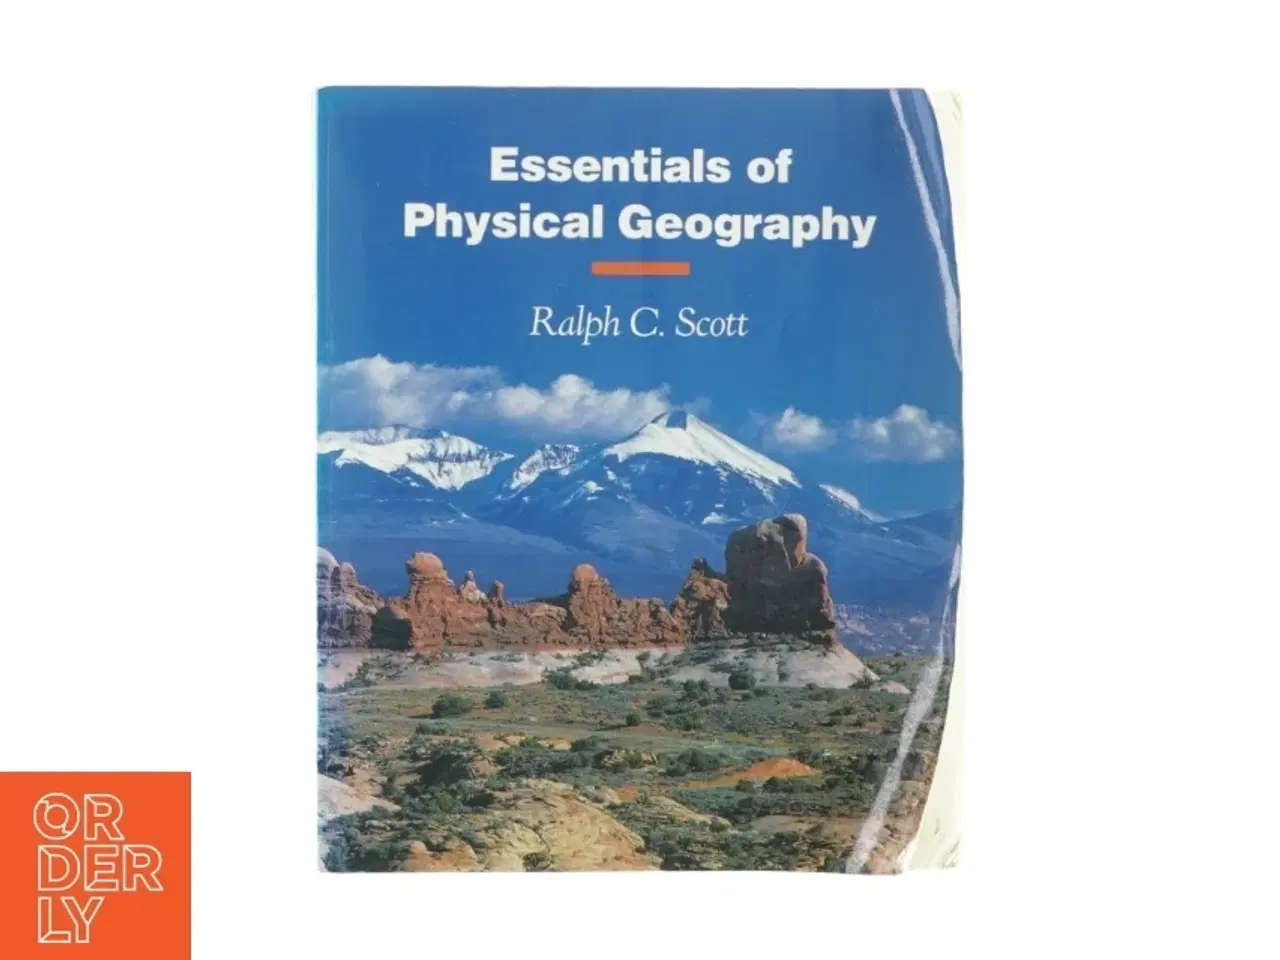 Billede 1 - Essentials of physical geography af Ralph C. Scott (bog)